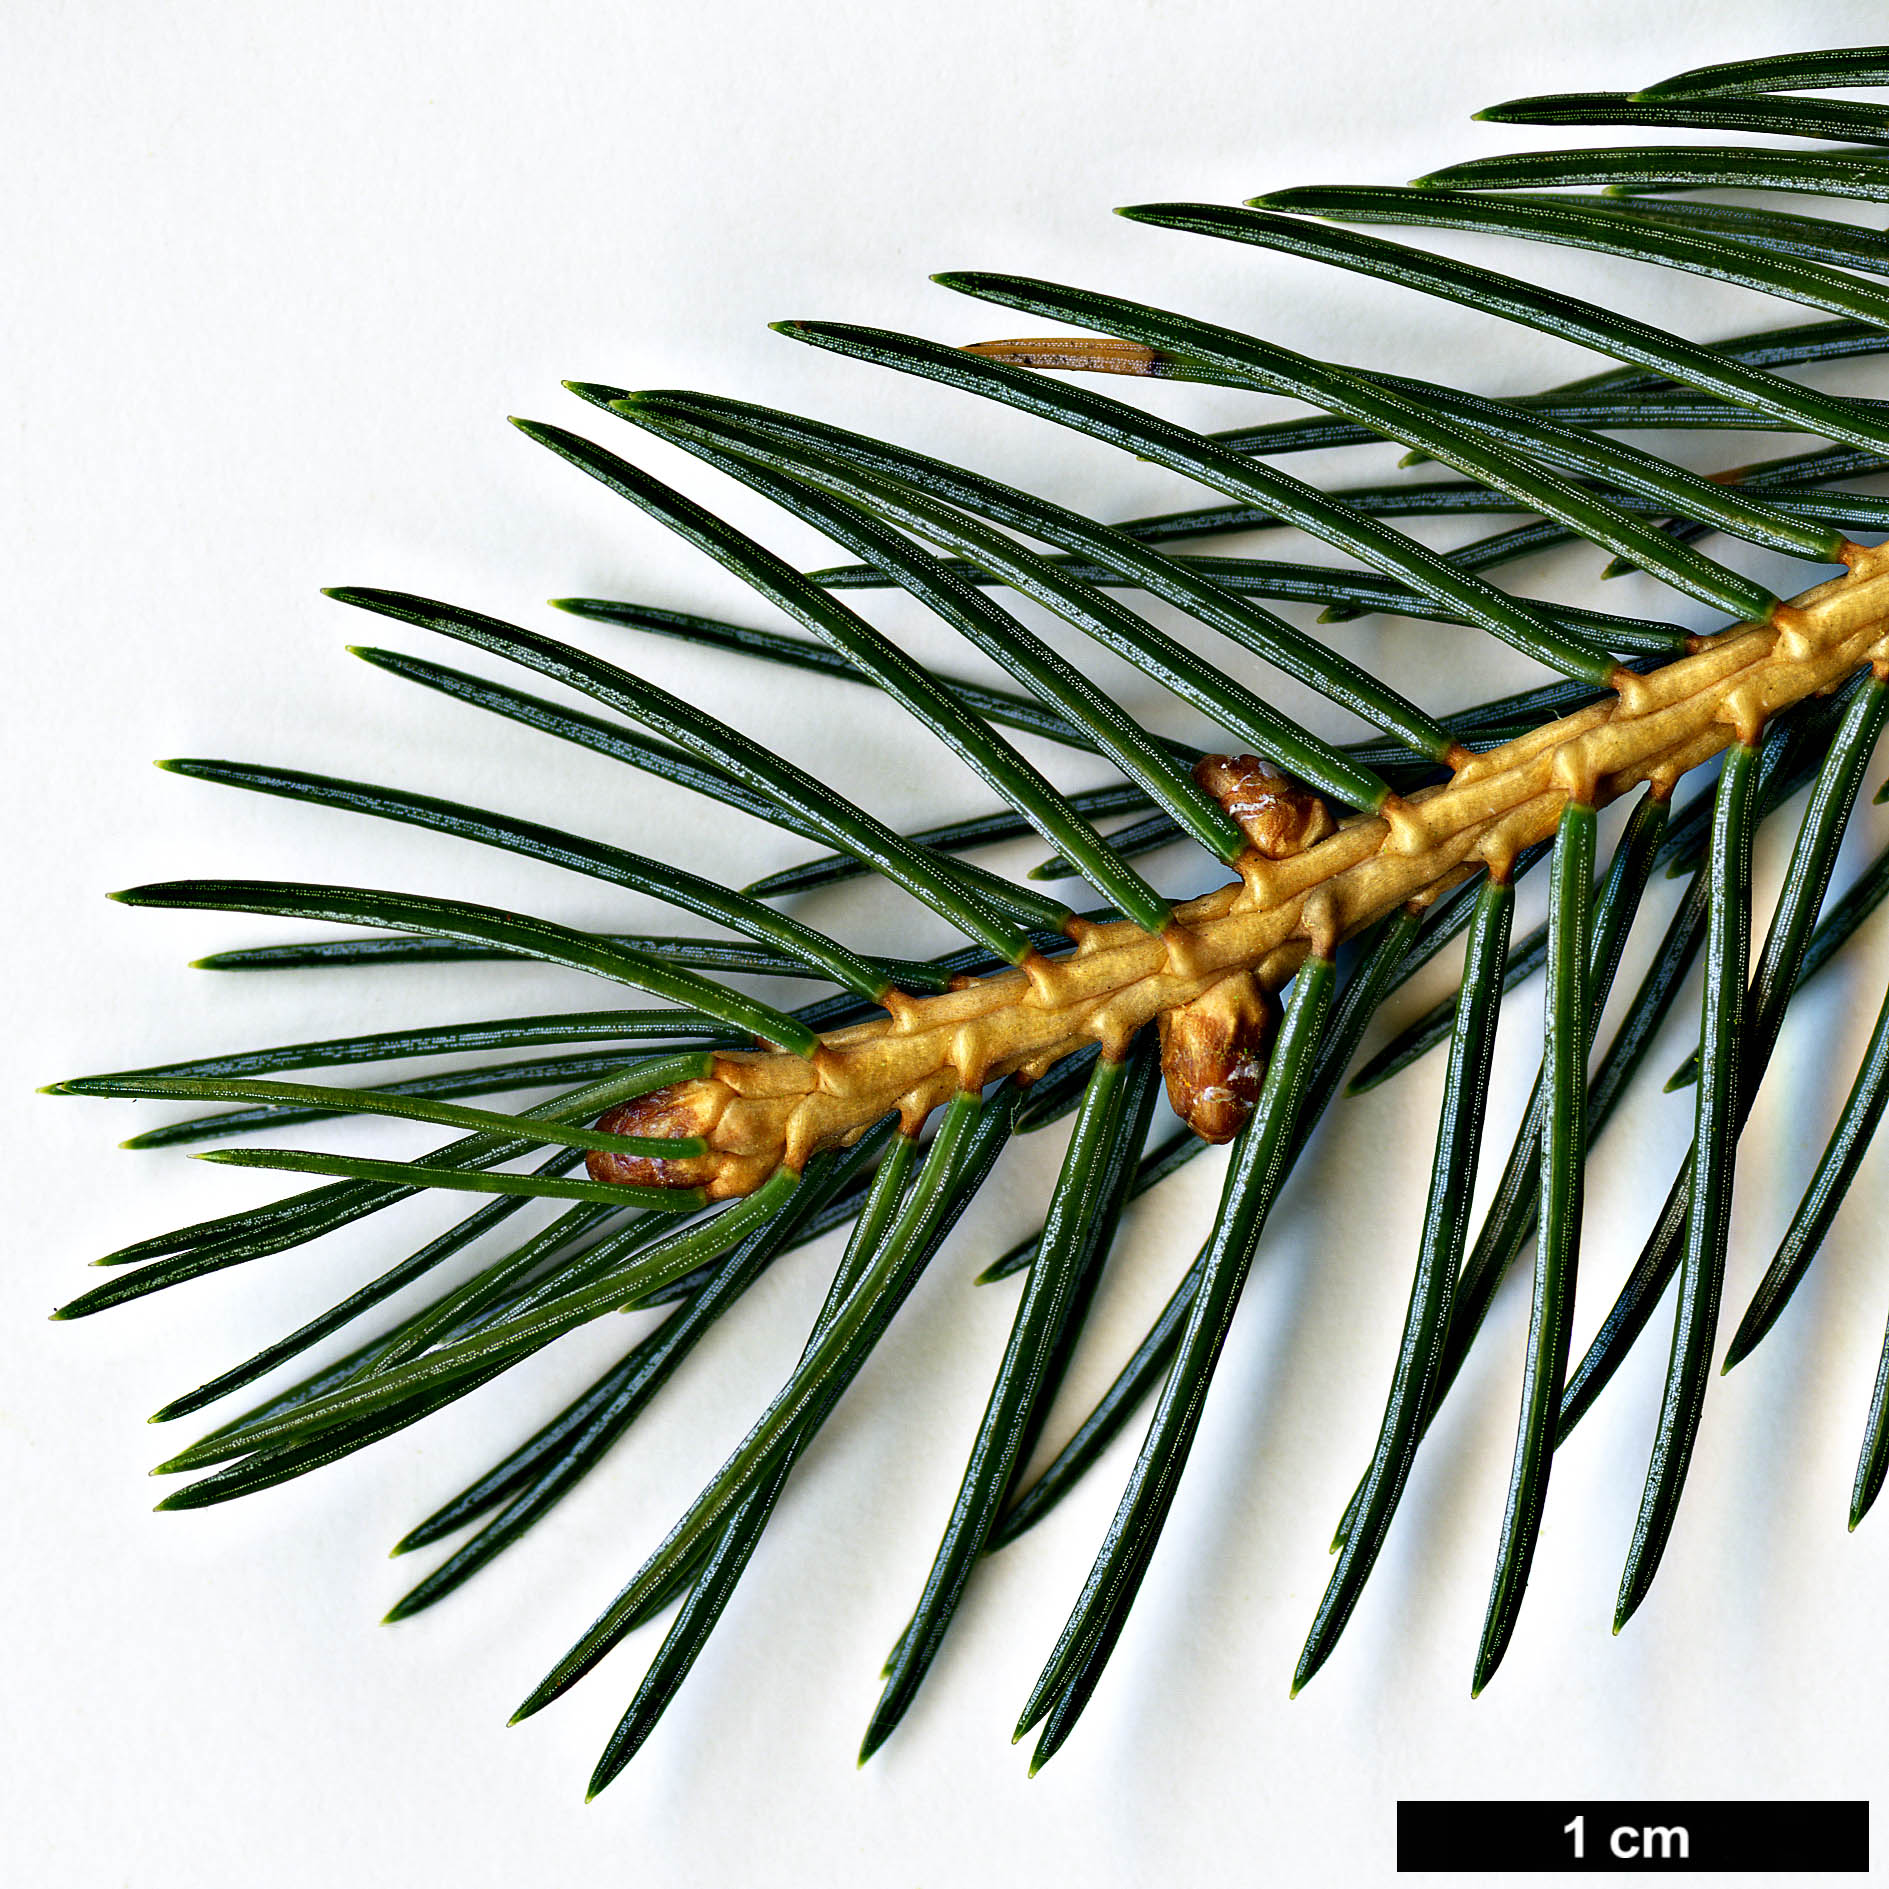 High resolution image: Family: Pinaceae - Genus: Picea - Taxon: alcoquiana - SpeciesSub: var. acicularis